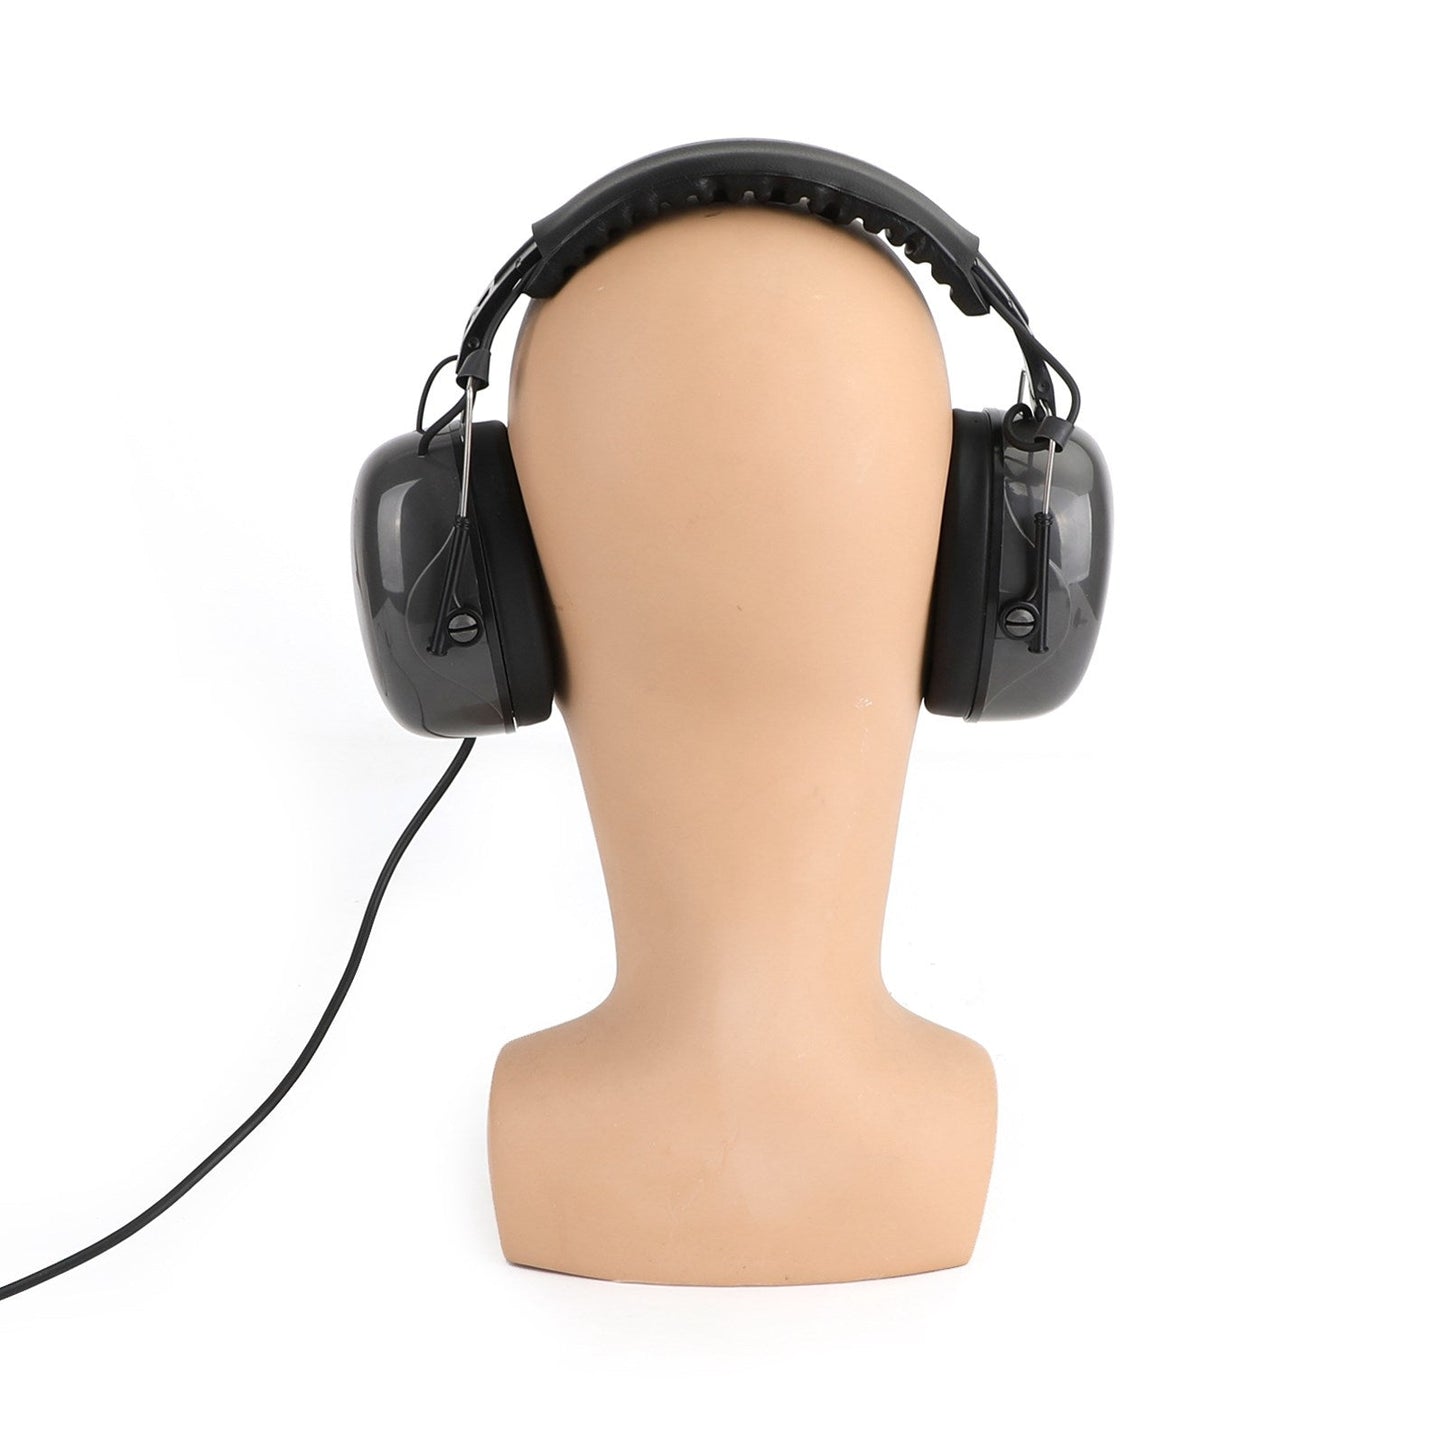 Einstellbares Headset MIT Geräuschunterdruckung, 7,1-mm-Stecker, Hervorragenden Akustisches Design